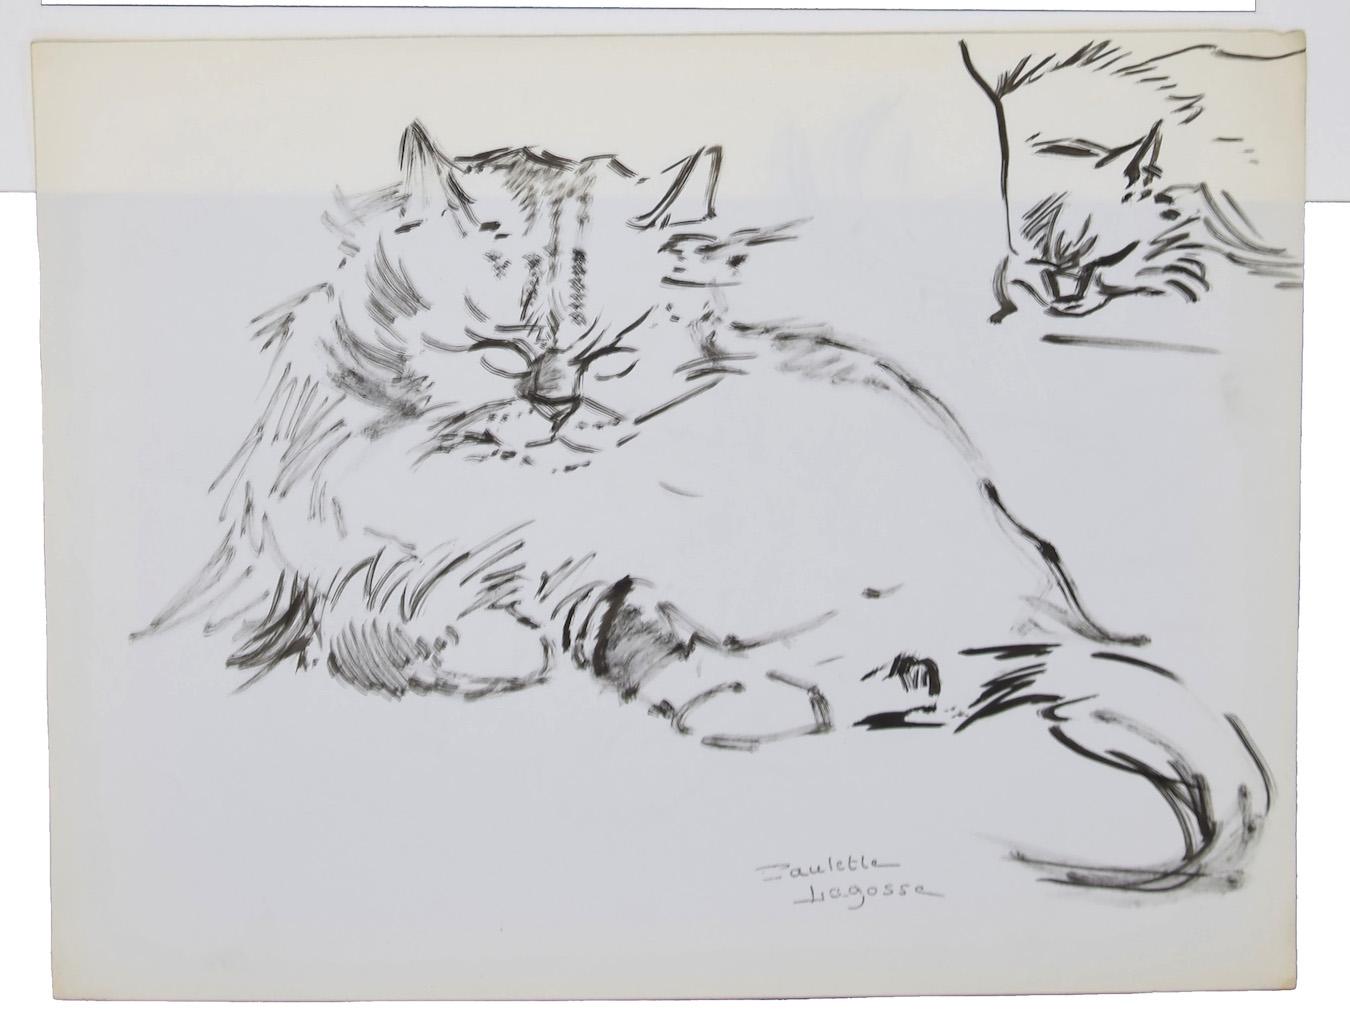 Les chats - Stylo sur papier de Marie Paulette Lagosse - 1970